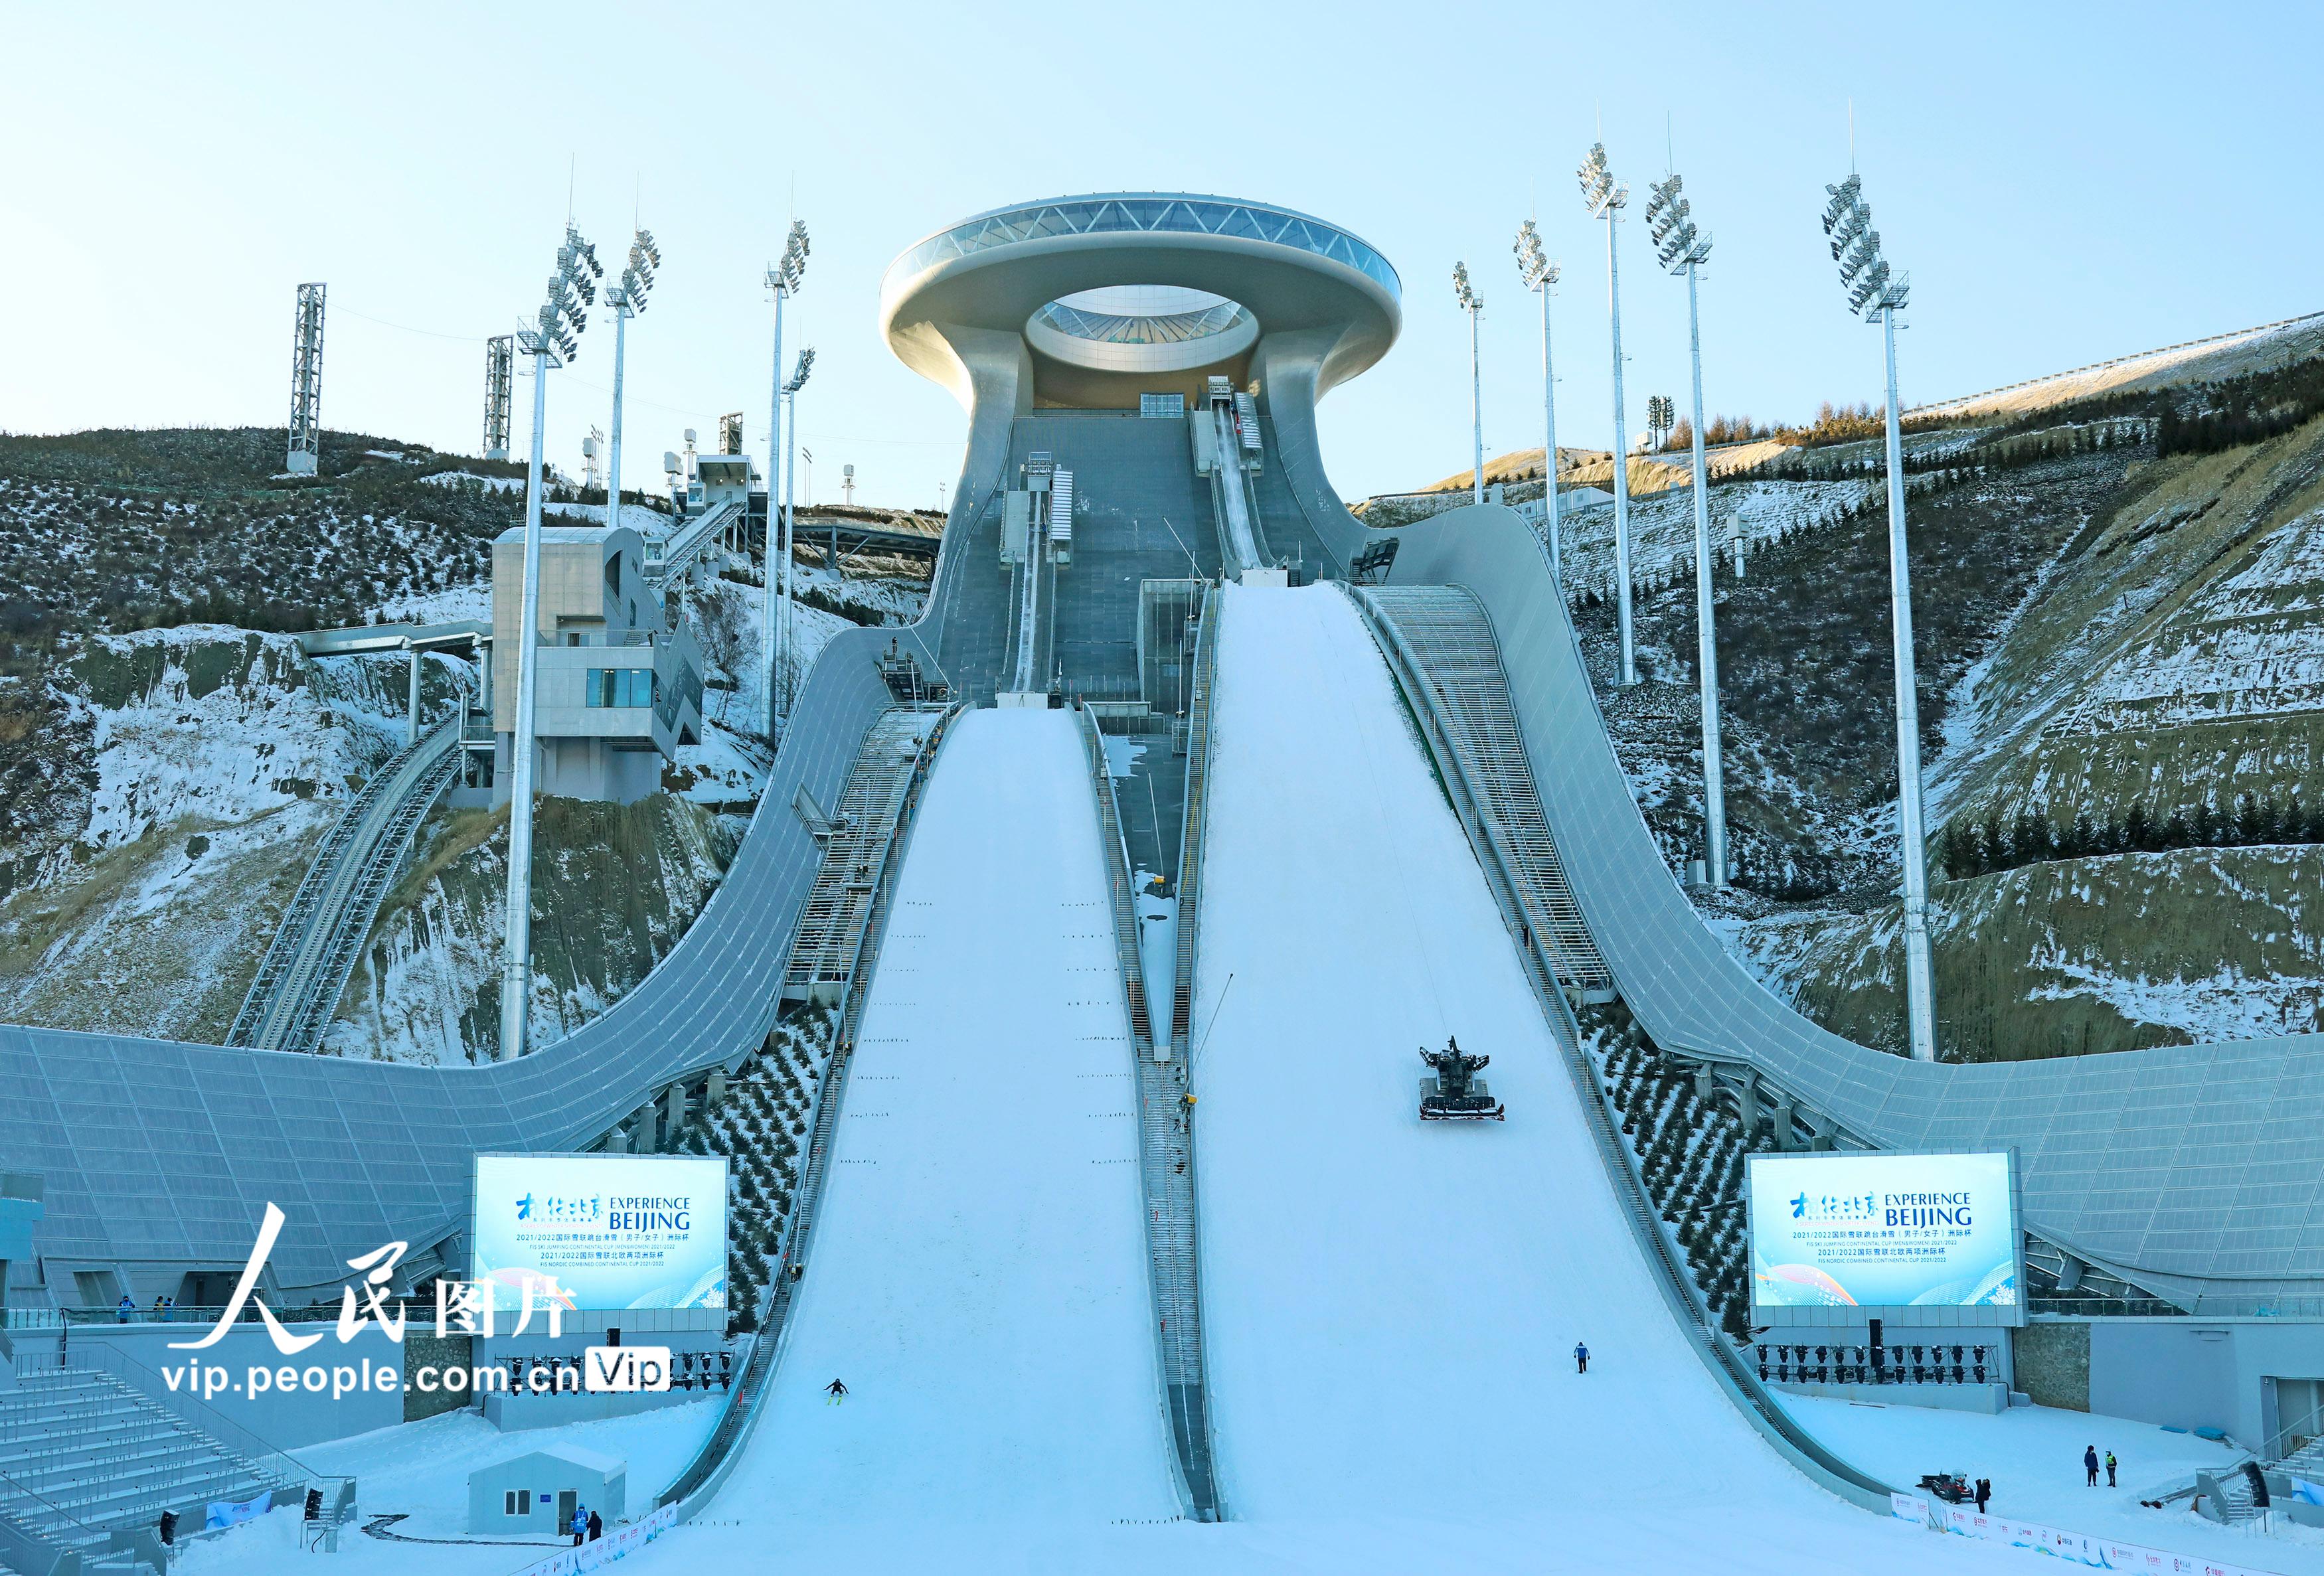 北京2022年冬奧會張家口賽區國家跳台滑雪中心迎來首日試滑